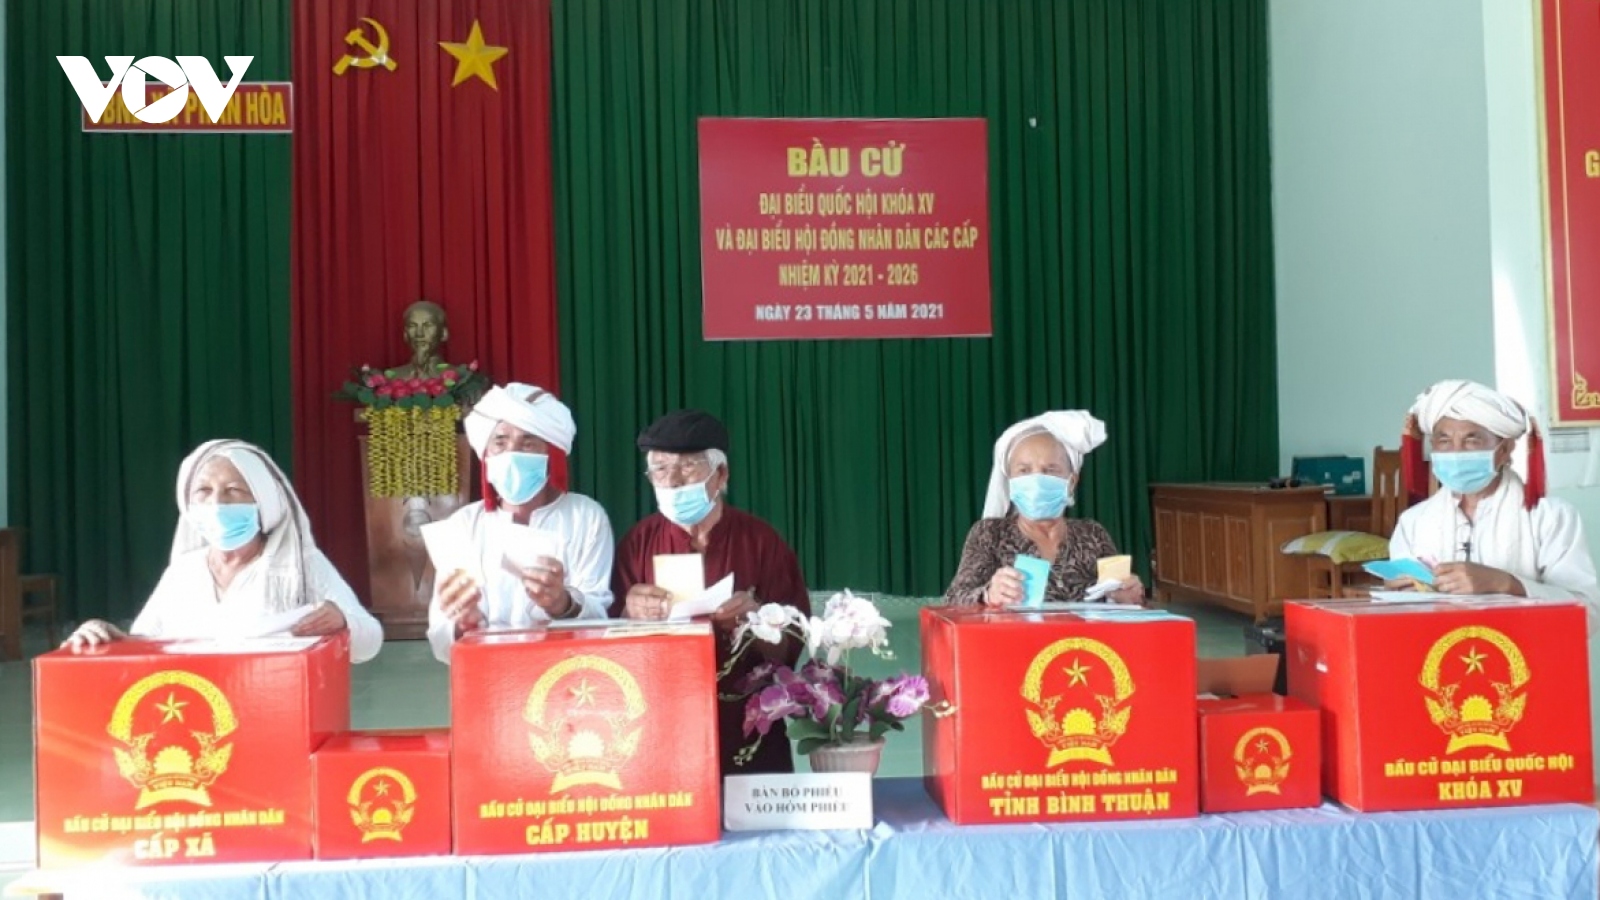 Bình Thuận bầu đủ 7 đại biểu Quốc hội khóa XV